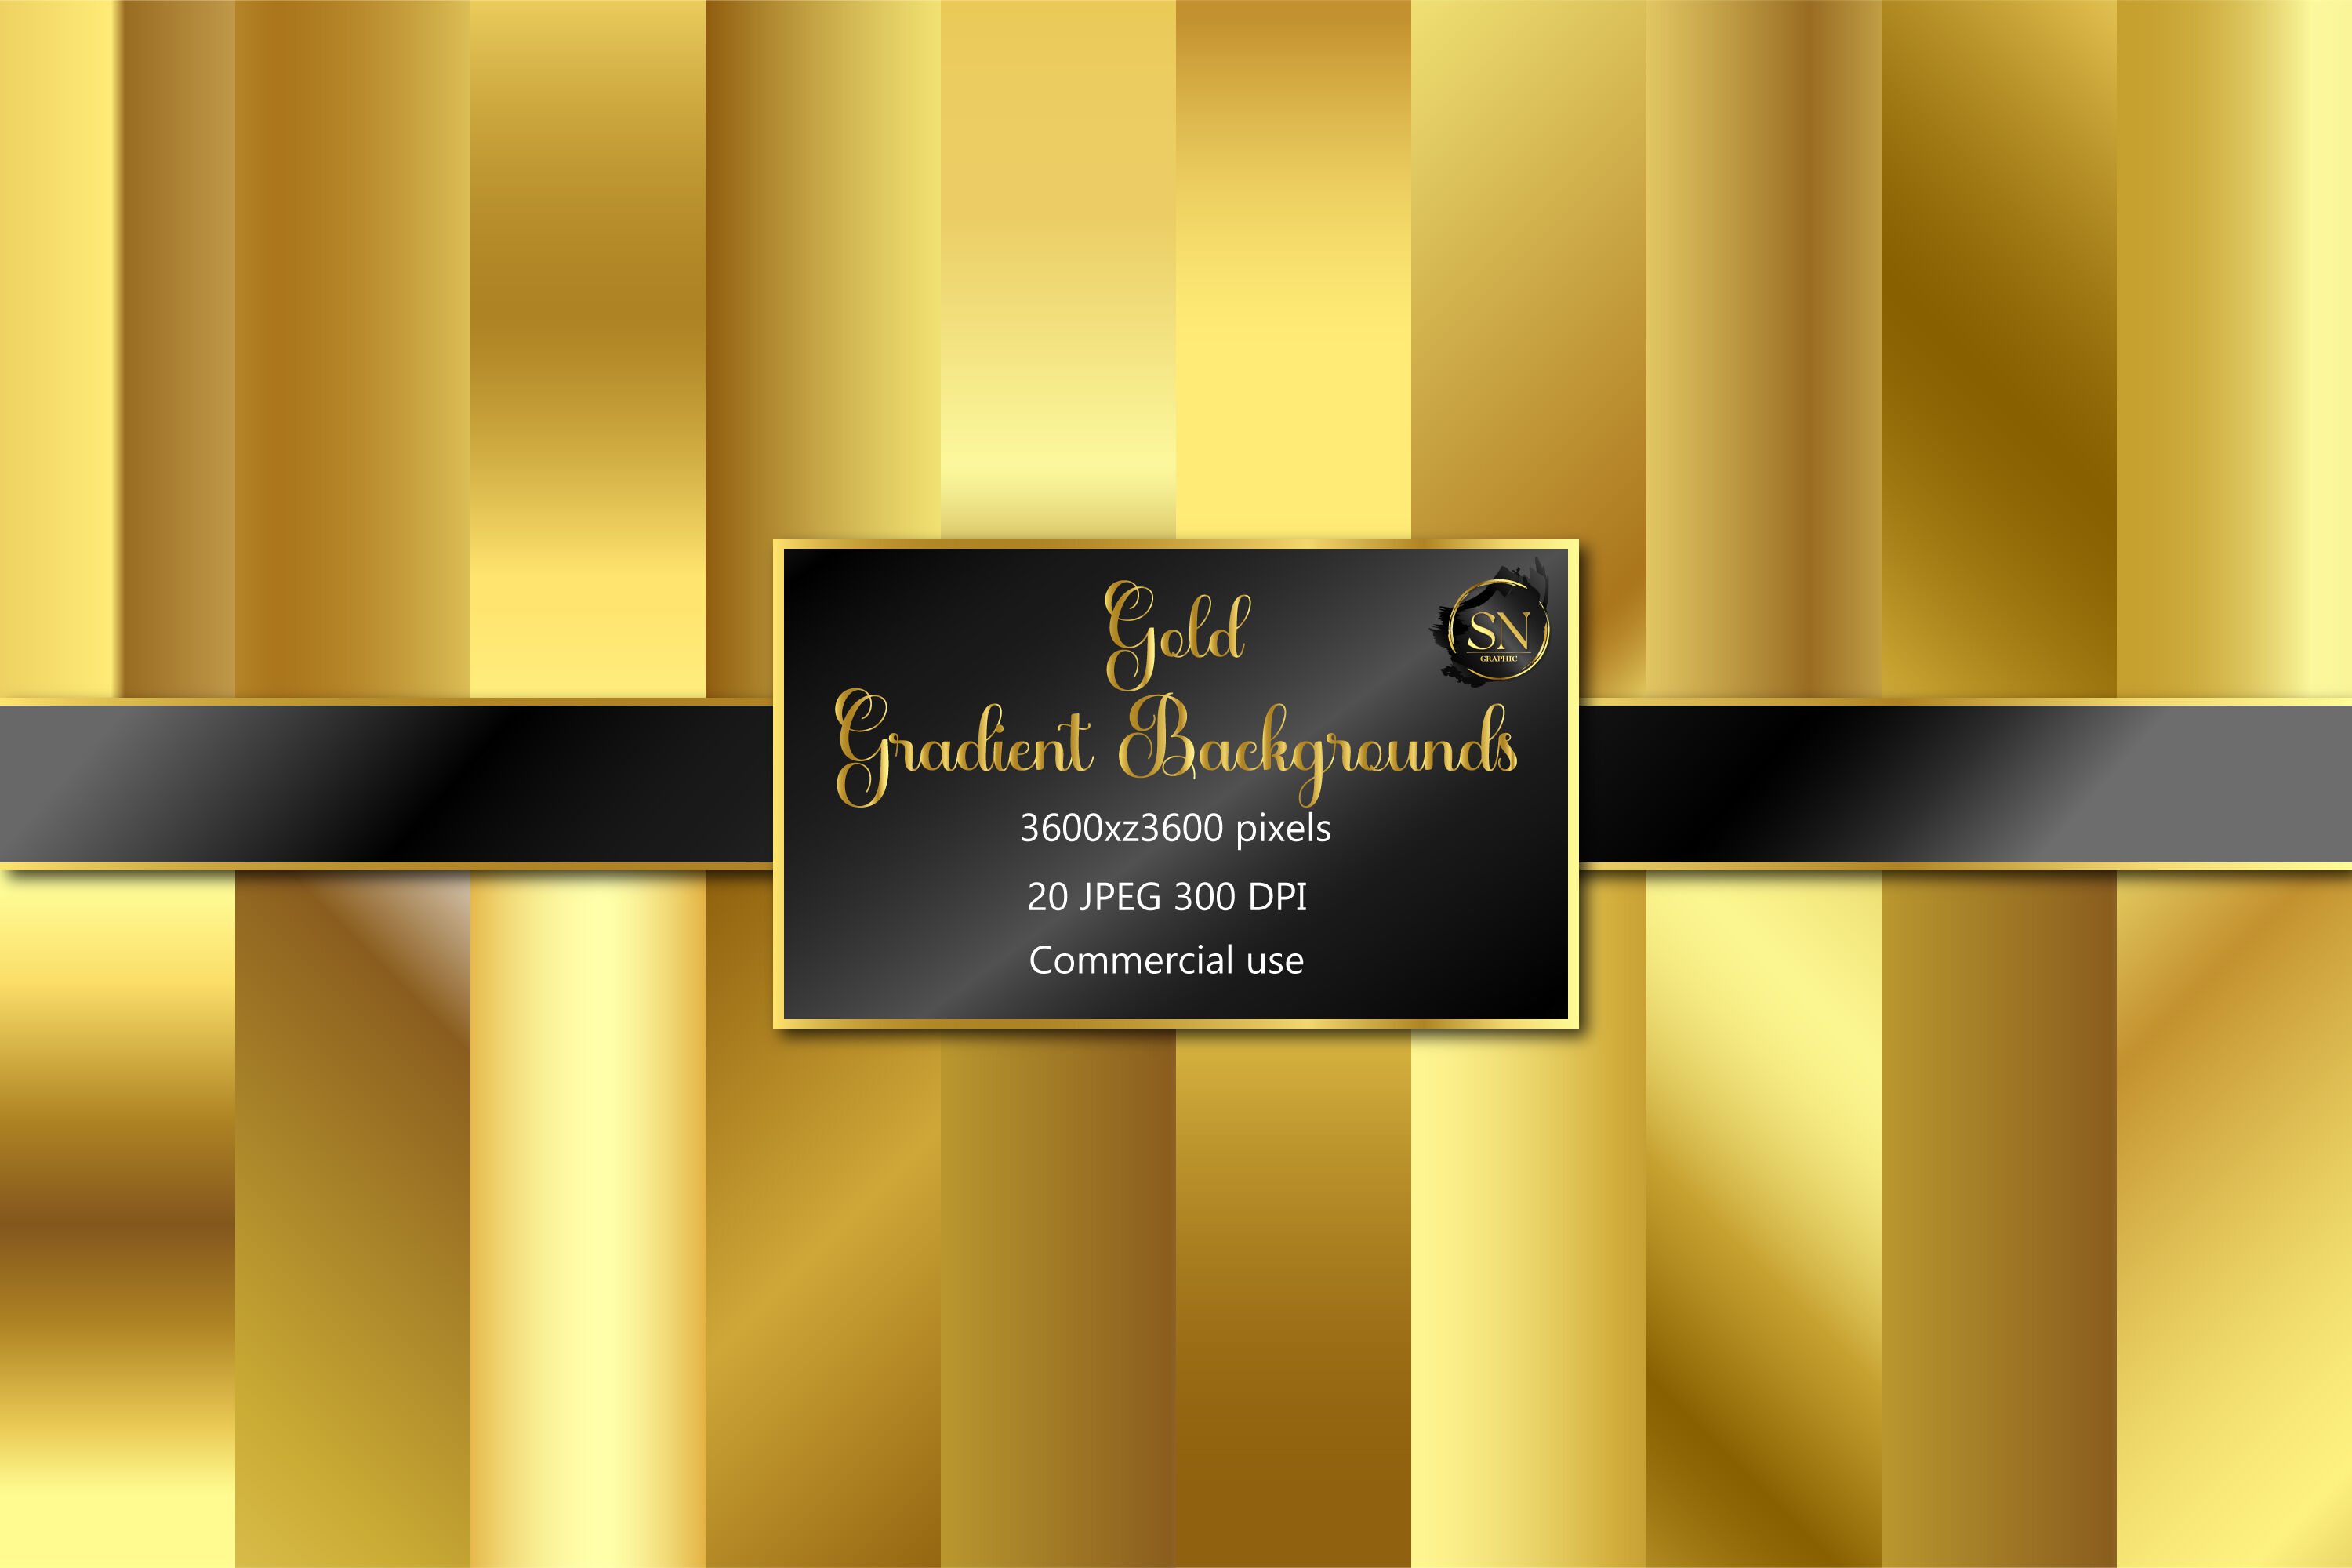 Gold Foil Digital Paper: gold DIGITAL Paper Metallic Gold Digital Paper  Gold Paper Gold Backgrounds Digital Gold Foil Paper 